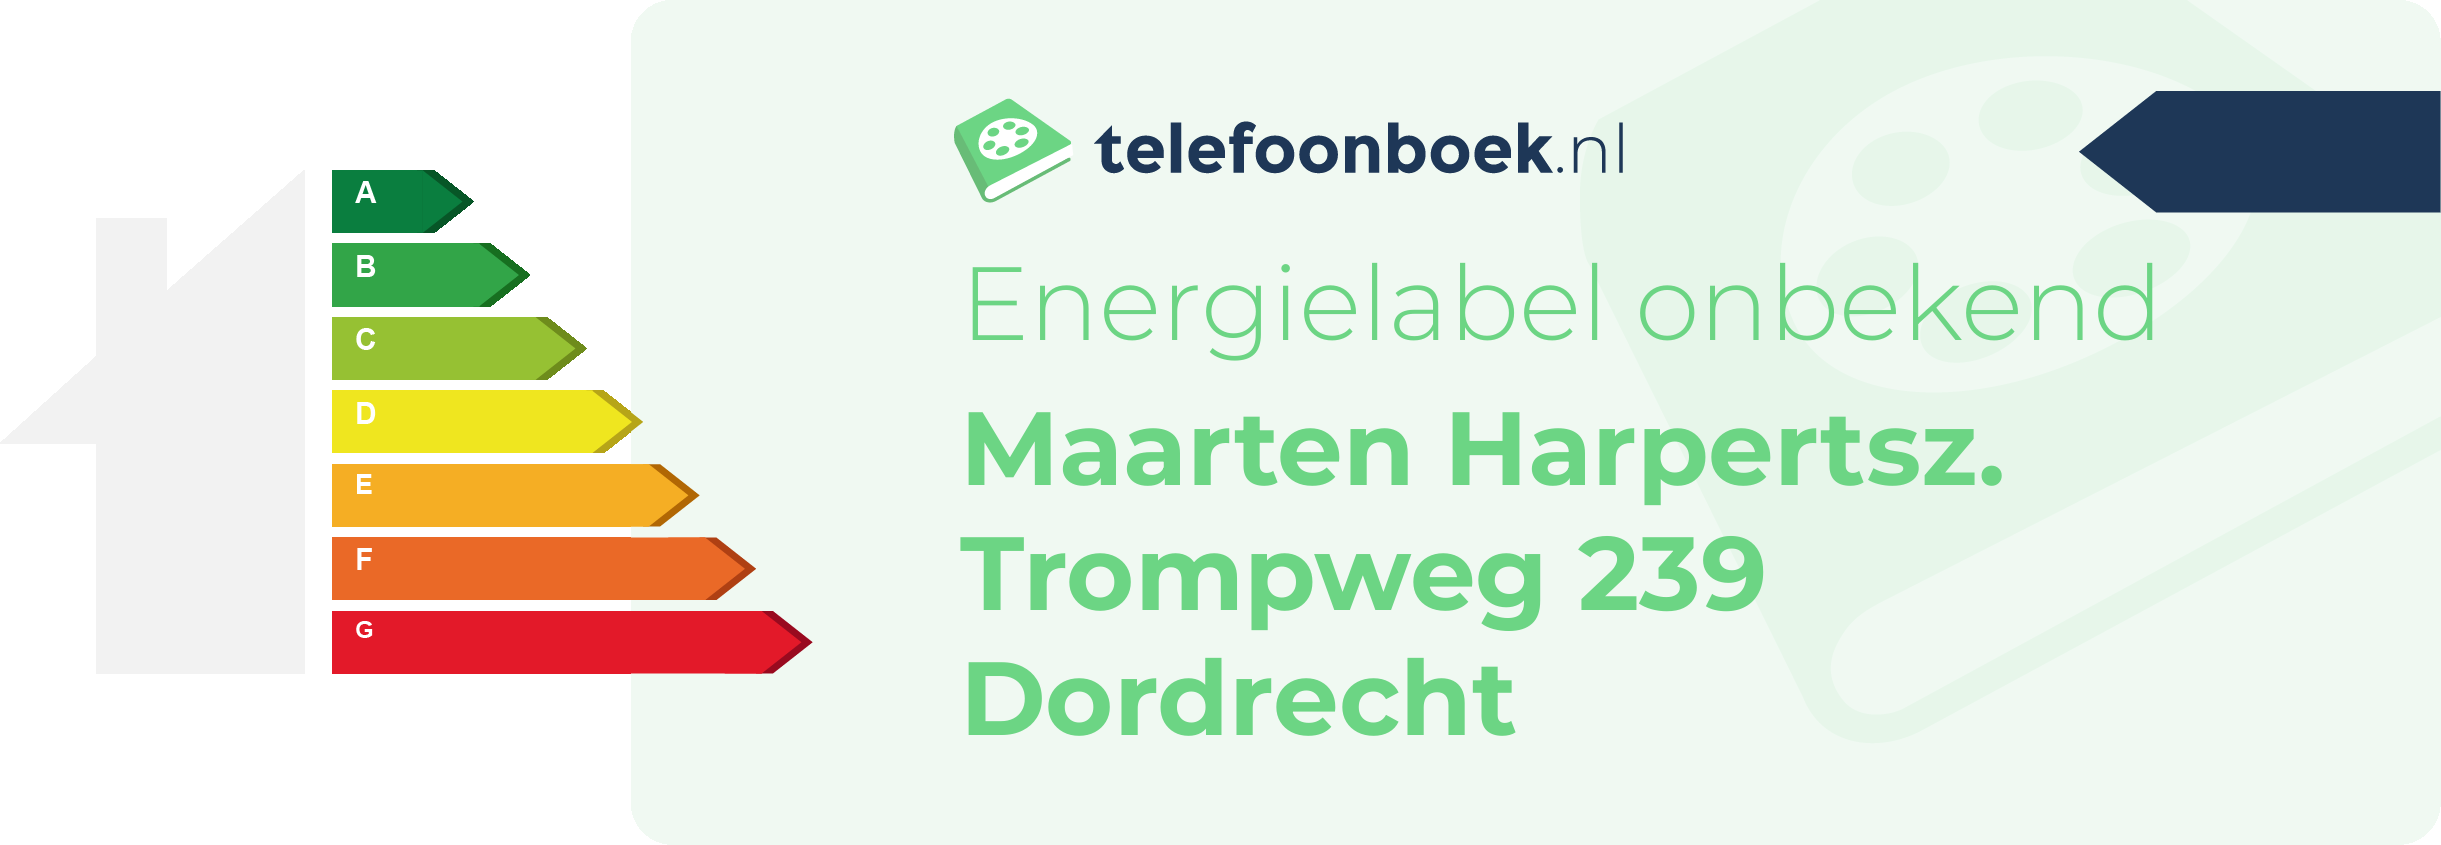 Energielabel Maarten Harpertsz. Trompweg 239 Dordrecht